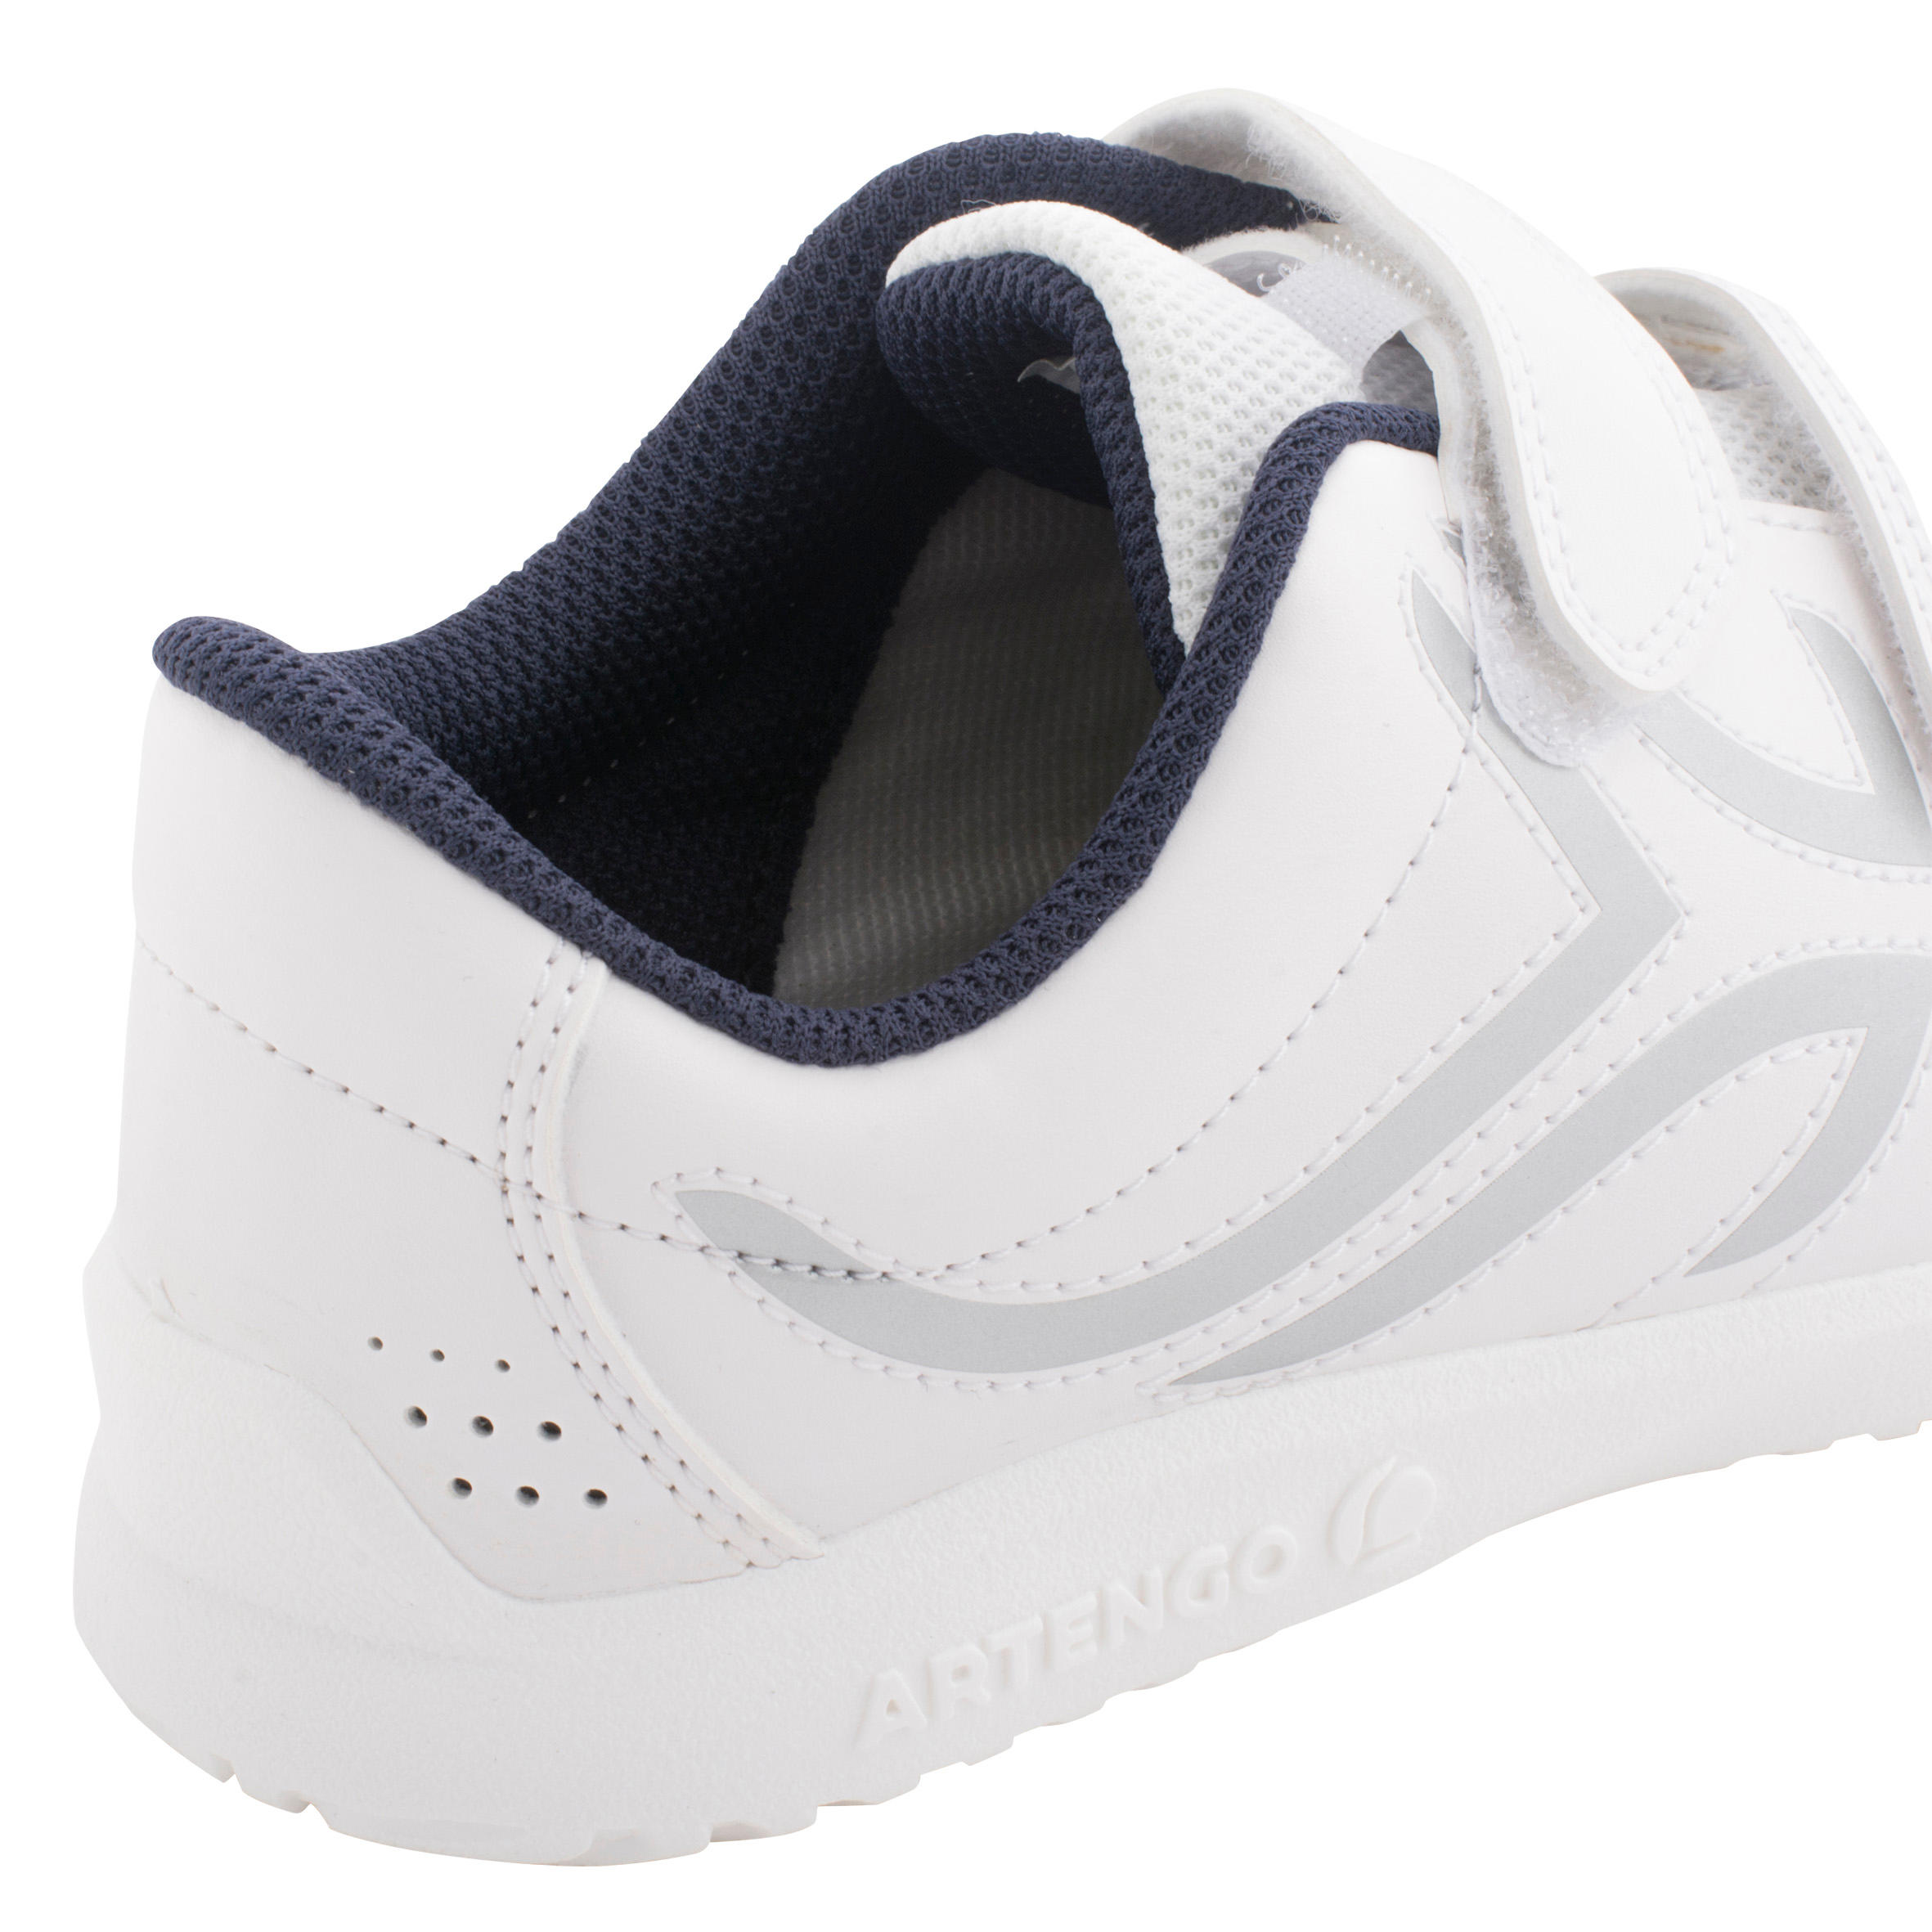 Chaussures à fermeture autoagrippante enfant - TS 100 blanc - DECATHLON